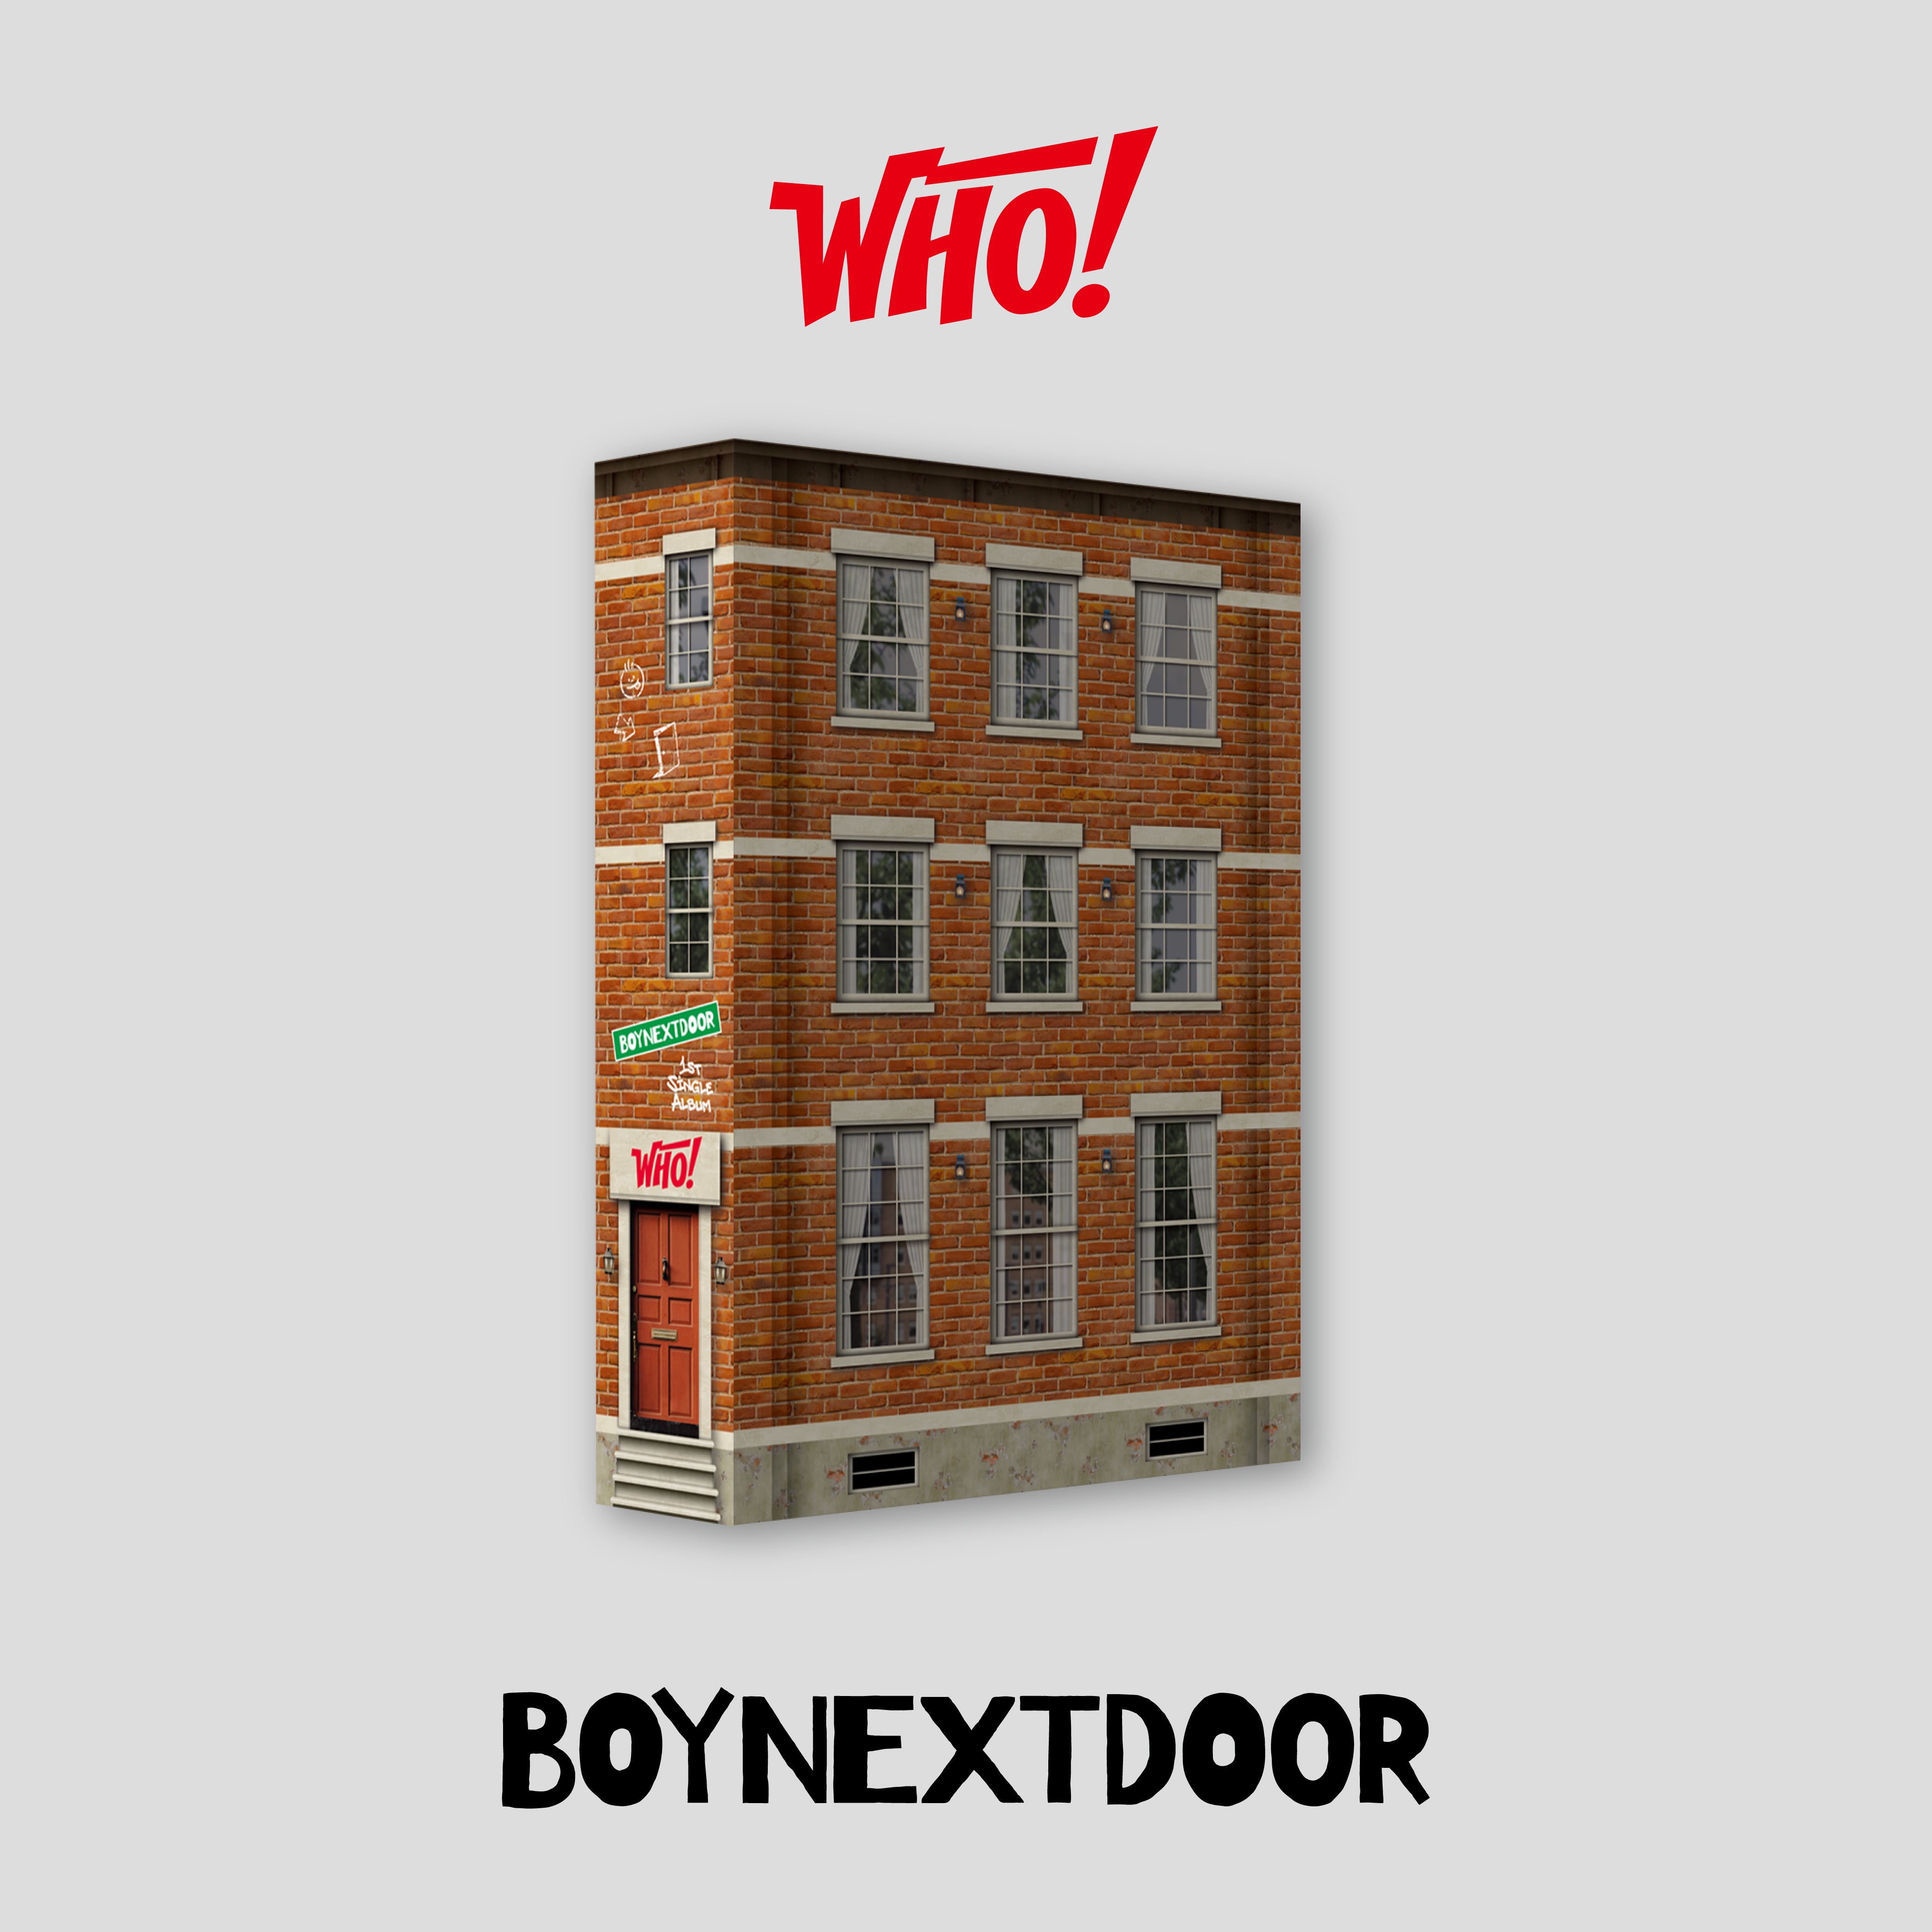 BOYNEXTDOOR - 1st シングルアルバム WHO!